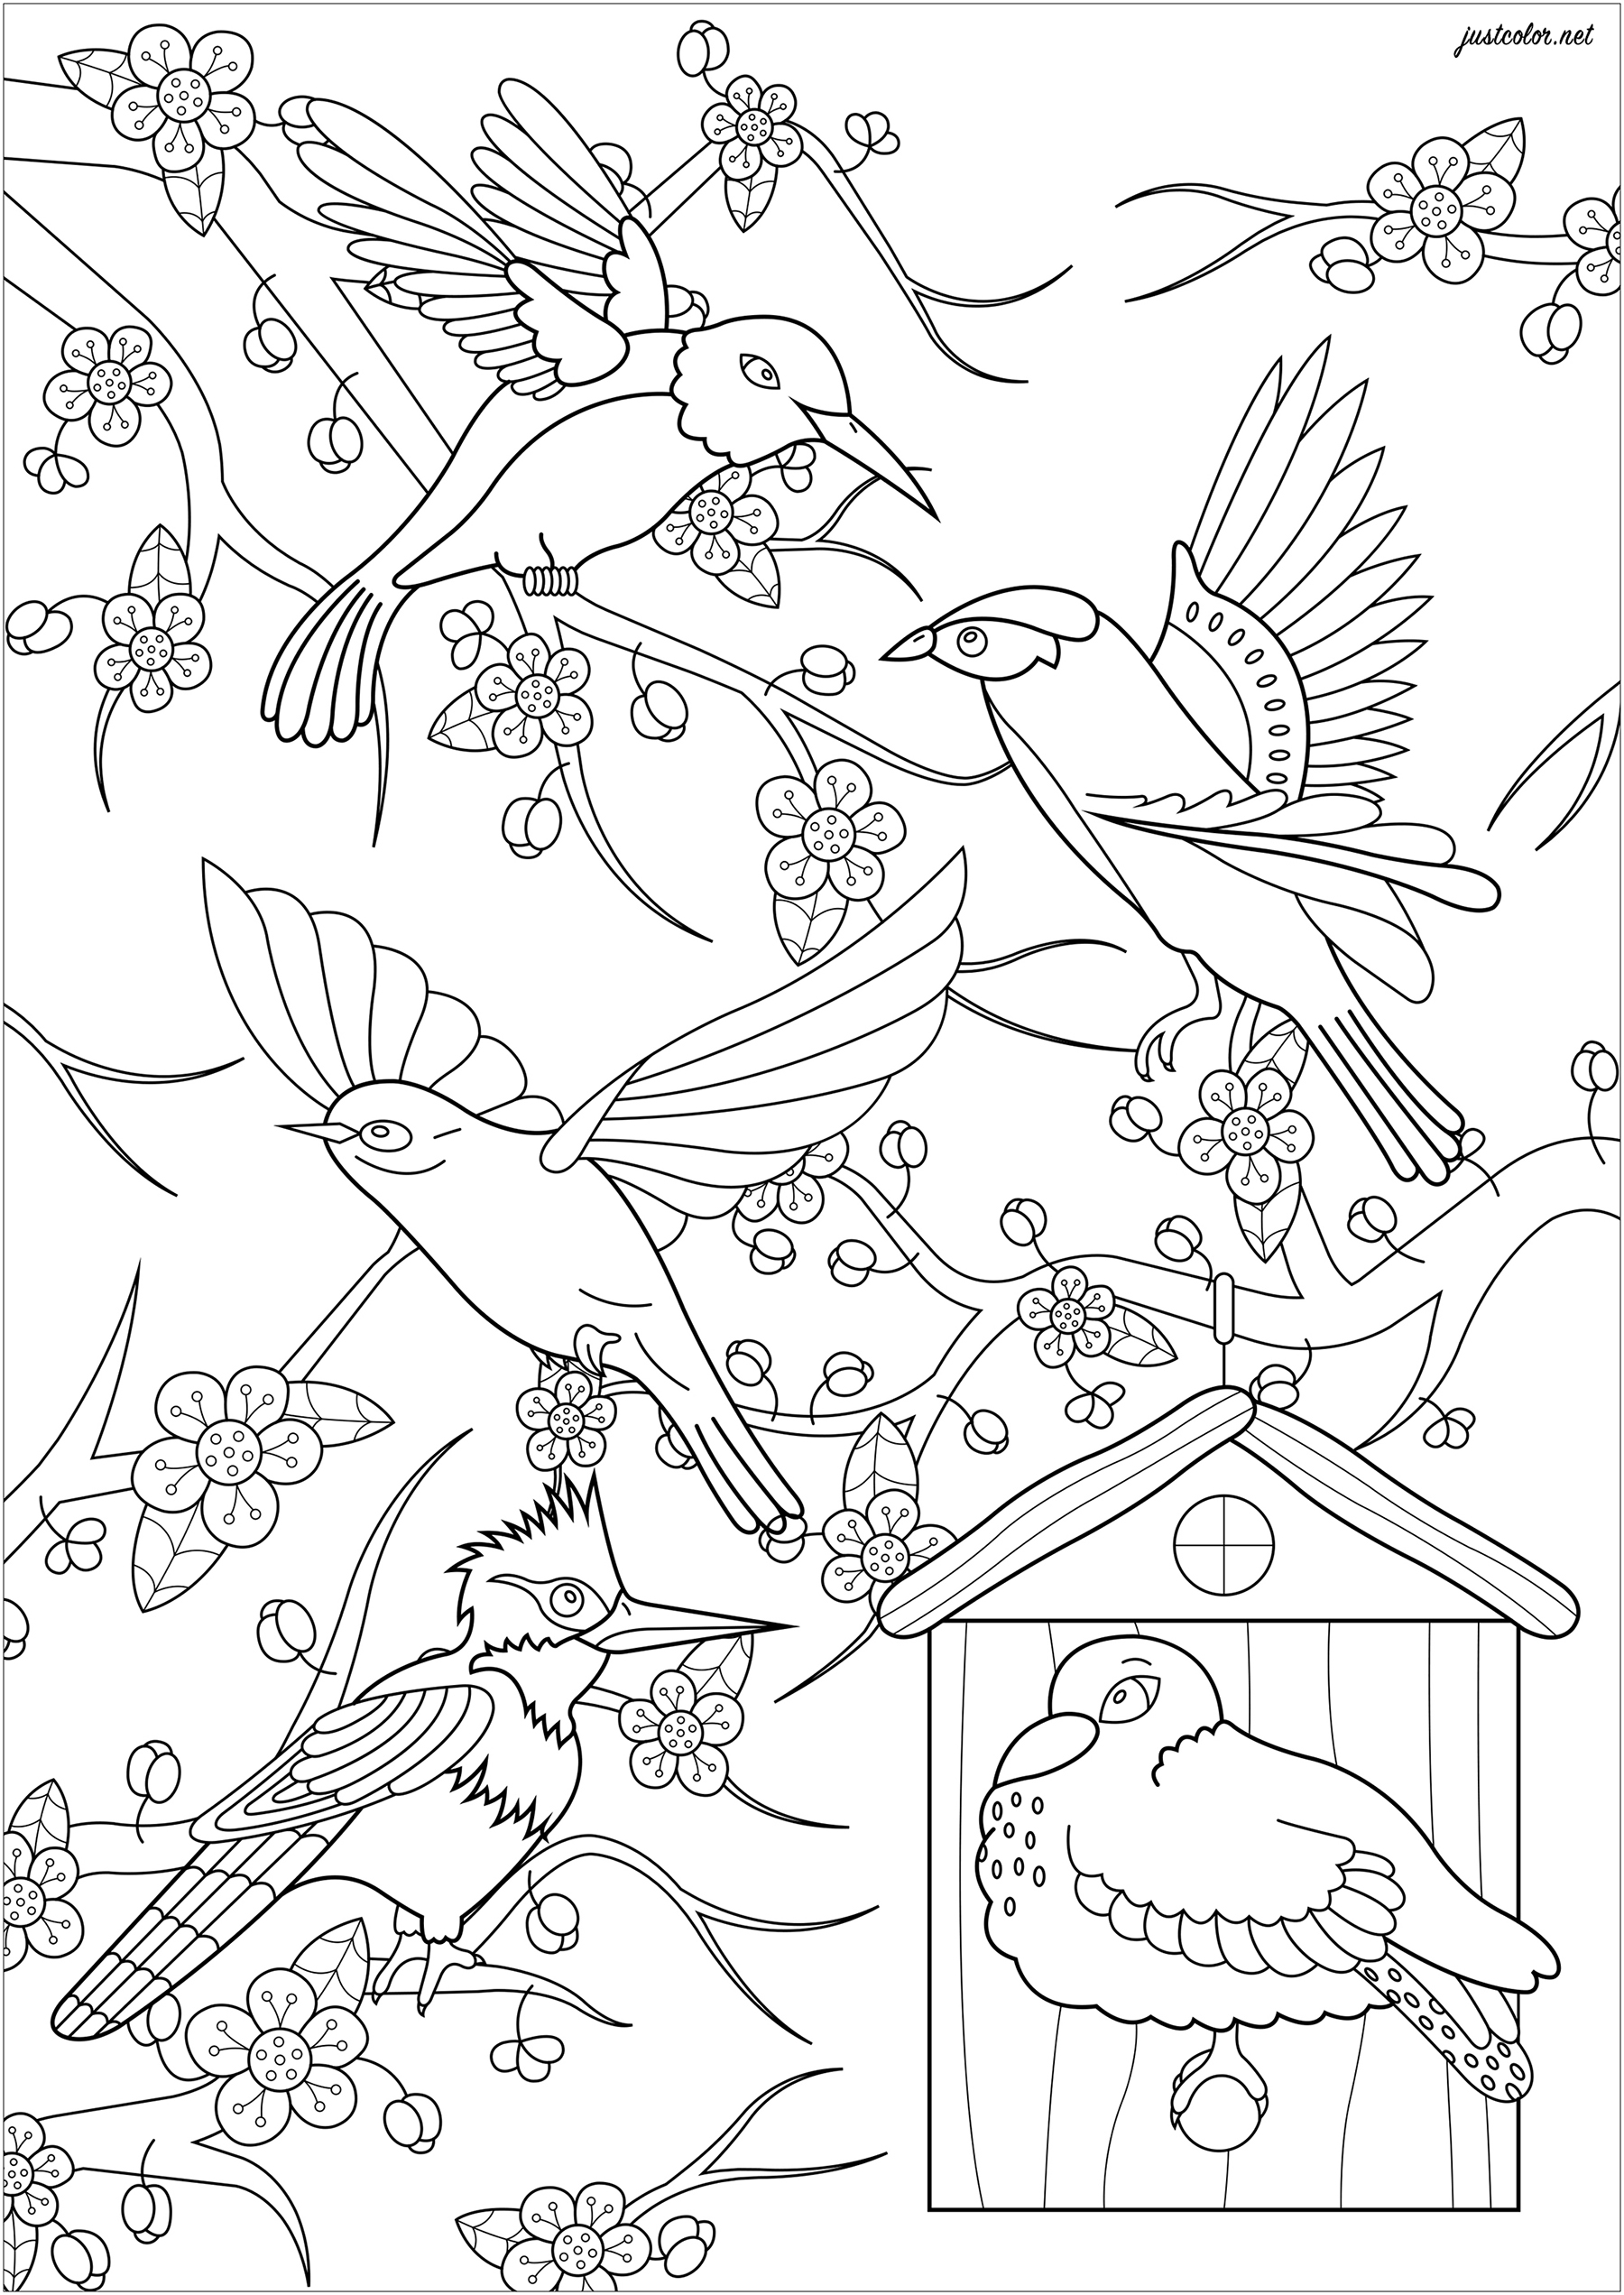 Pinte estes cinco pássaros que voam em frente a uma cerejeira japonesa, Artista : Lucie